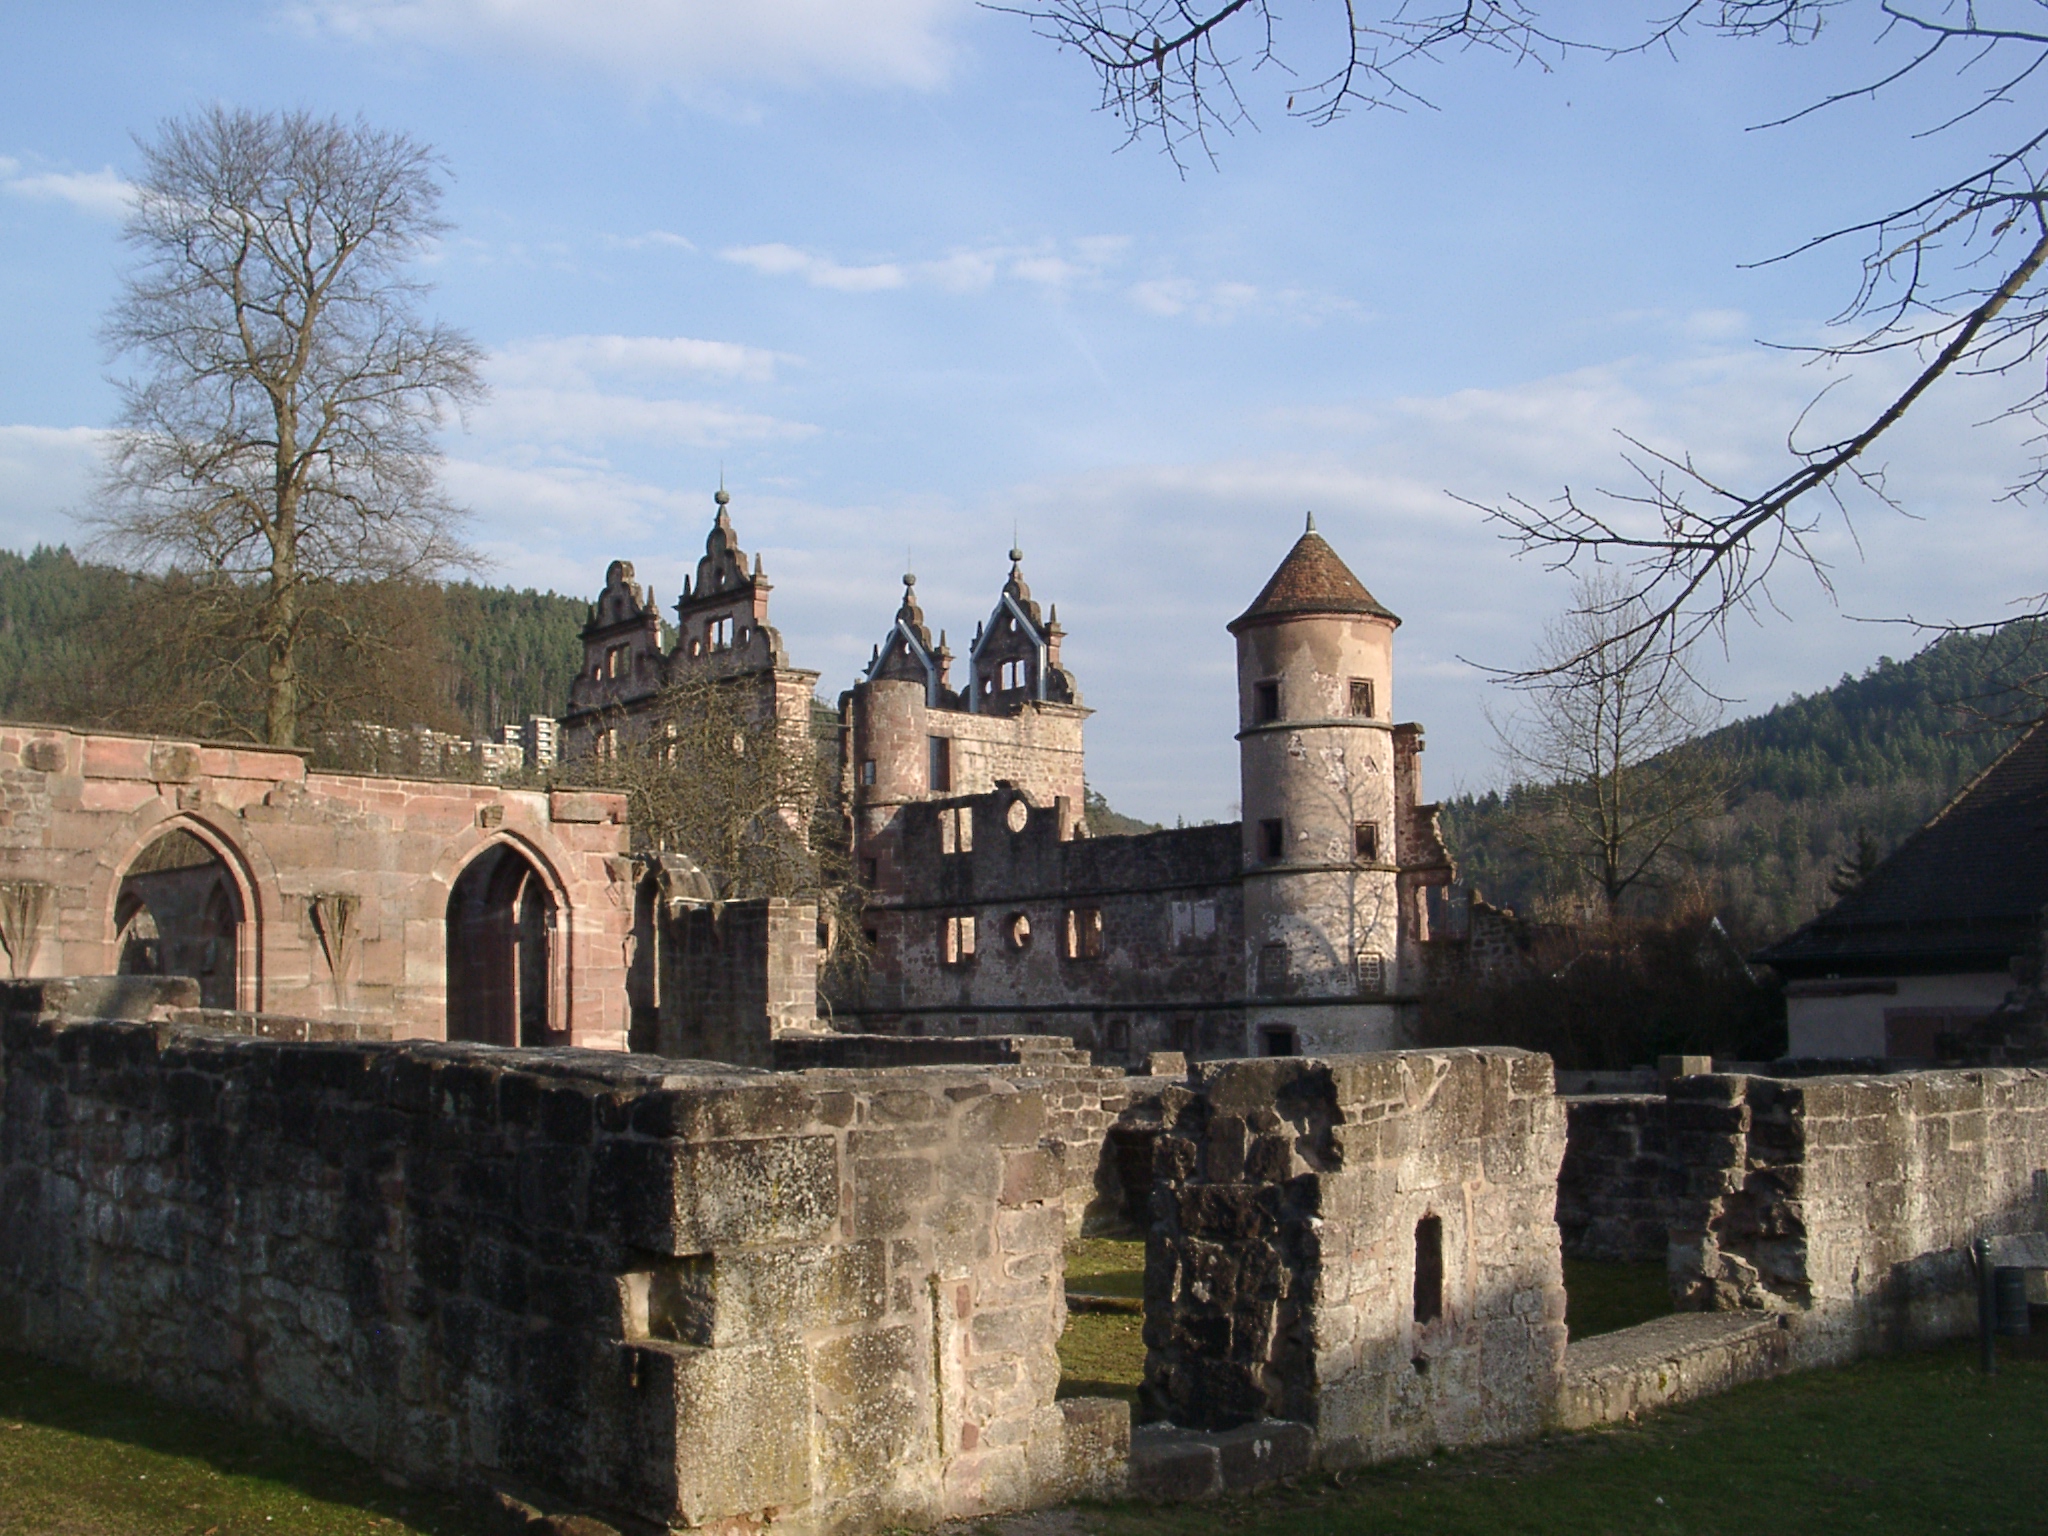 希尔绍修道院（Hirsau Abbey）废墟。曾经是德意志地区最大的本笃会修道院之一，可能是Kiersau的原型。